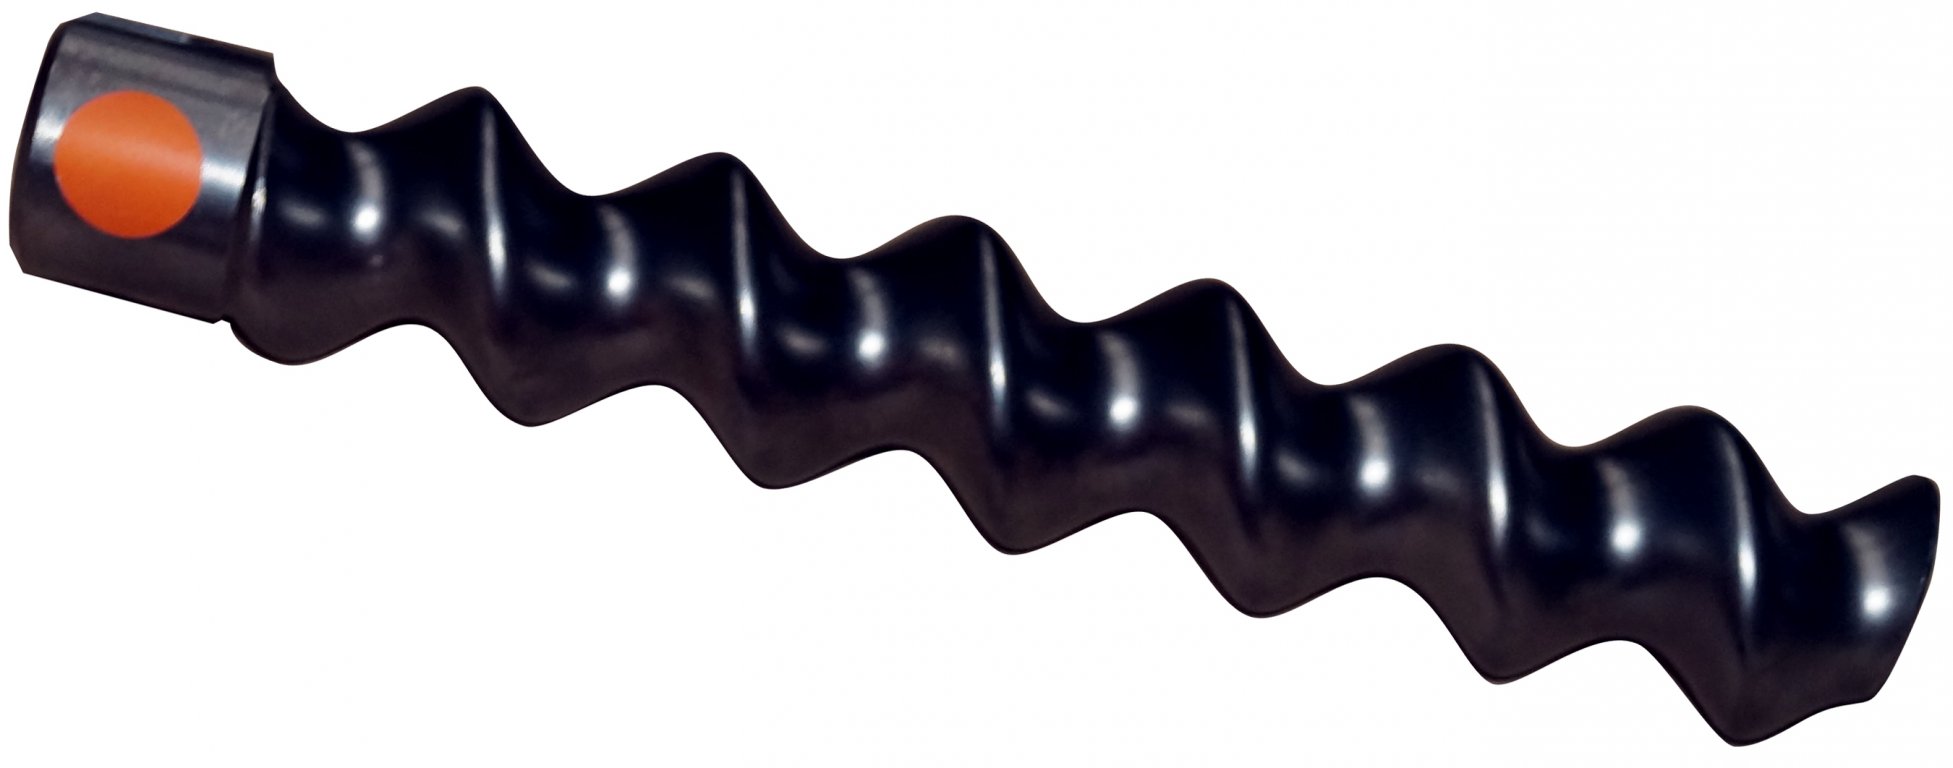 D6-3 C45 conveying screw